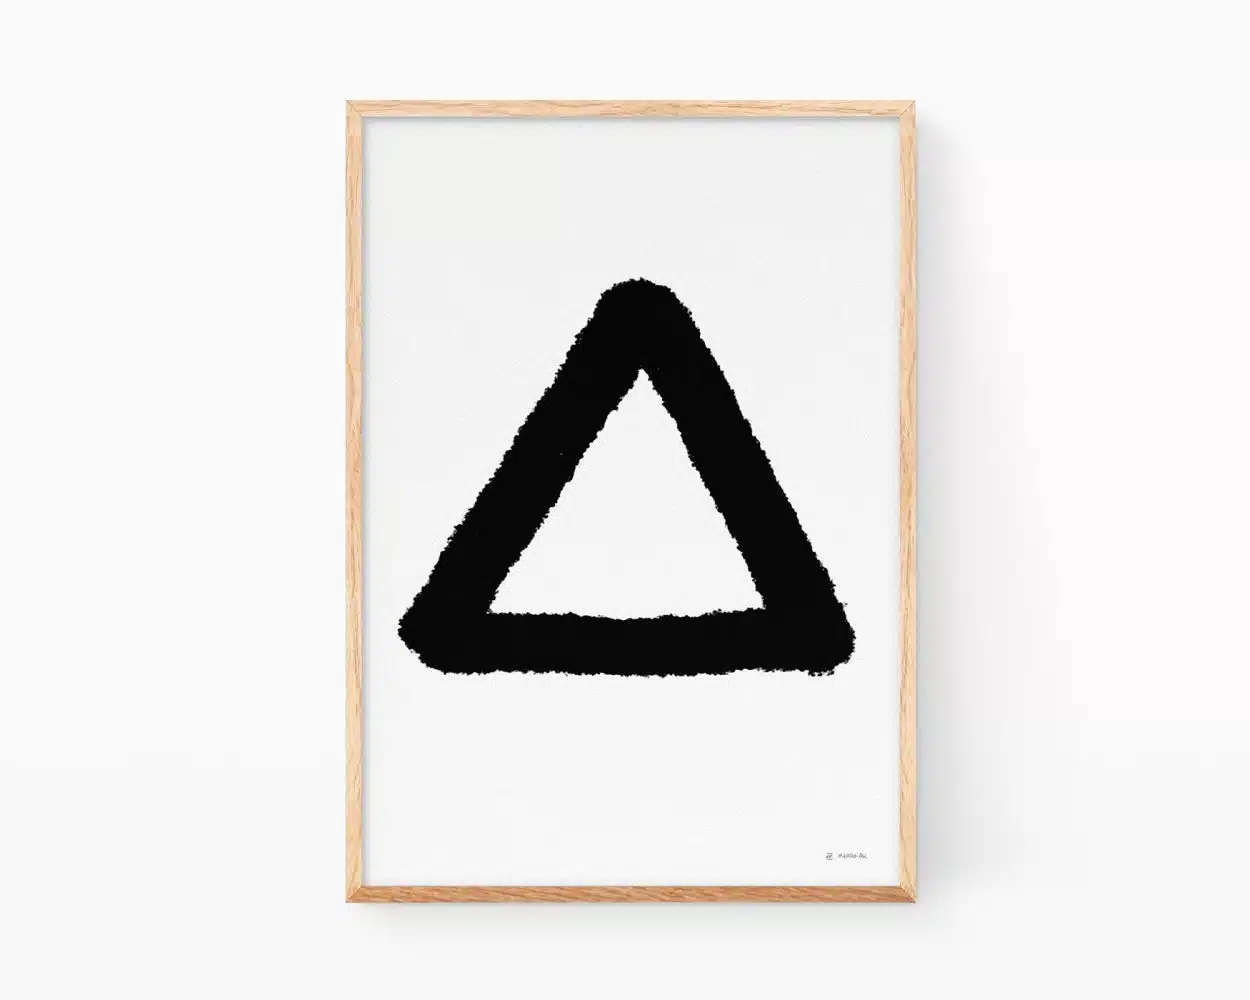 Cuadros abstractos zen. Lámina decorativa para enmarcar con un dibujo minimalista de un triángulo negro sobre fondo blanco. Decoración en blanco y negro para el hogar, centros de yoga y masajes.